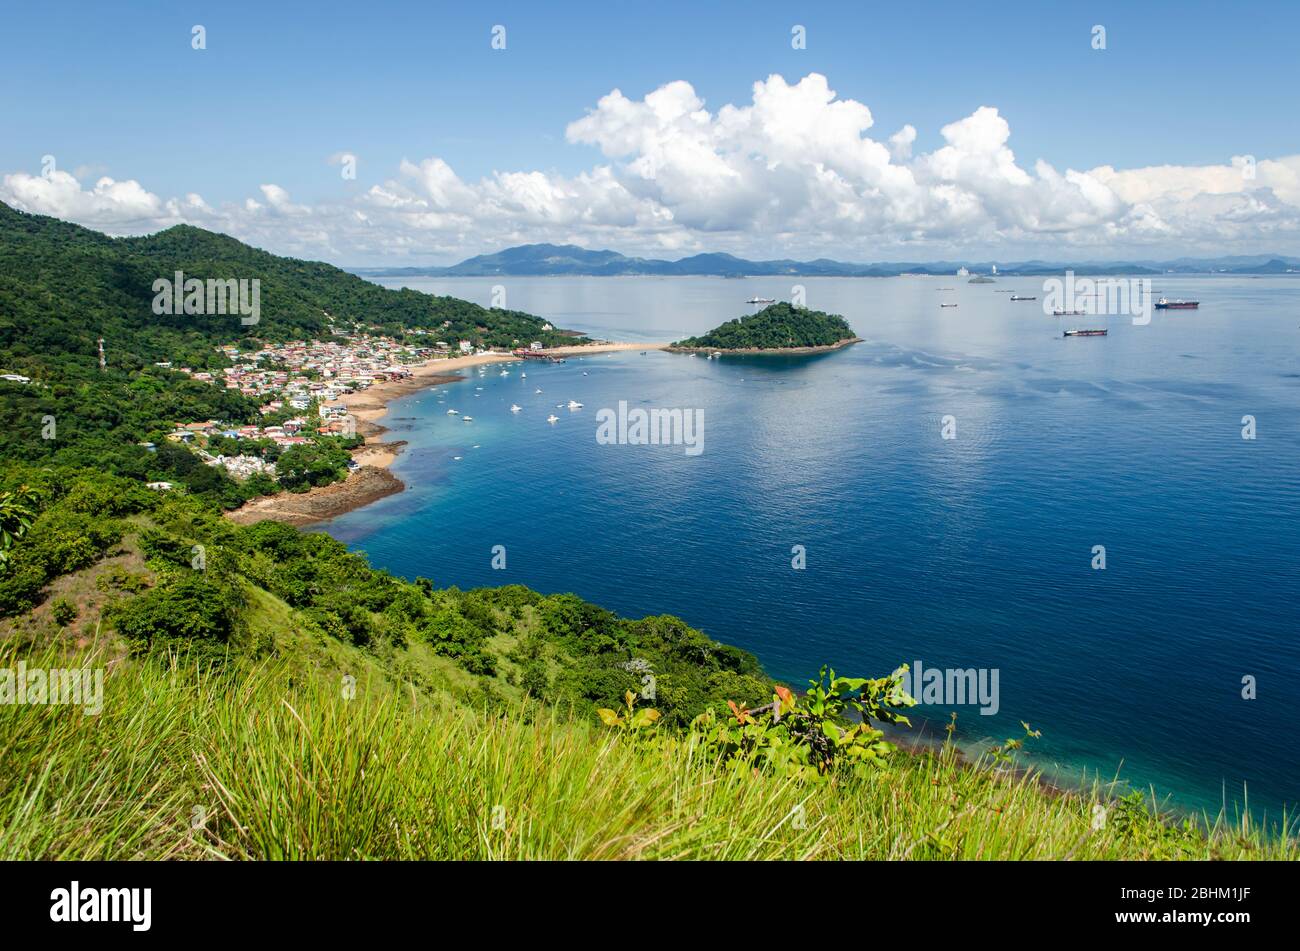 Splendida vista panoramica dell'isola di Taboga nella baia di Panama Foto Stock